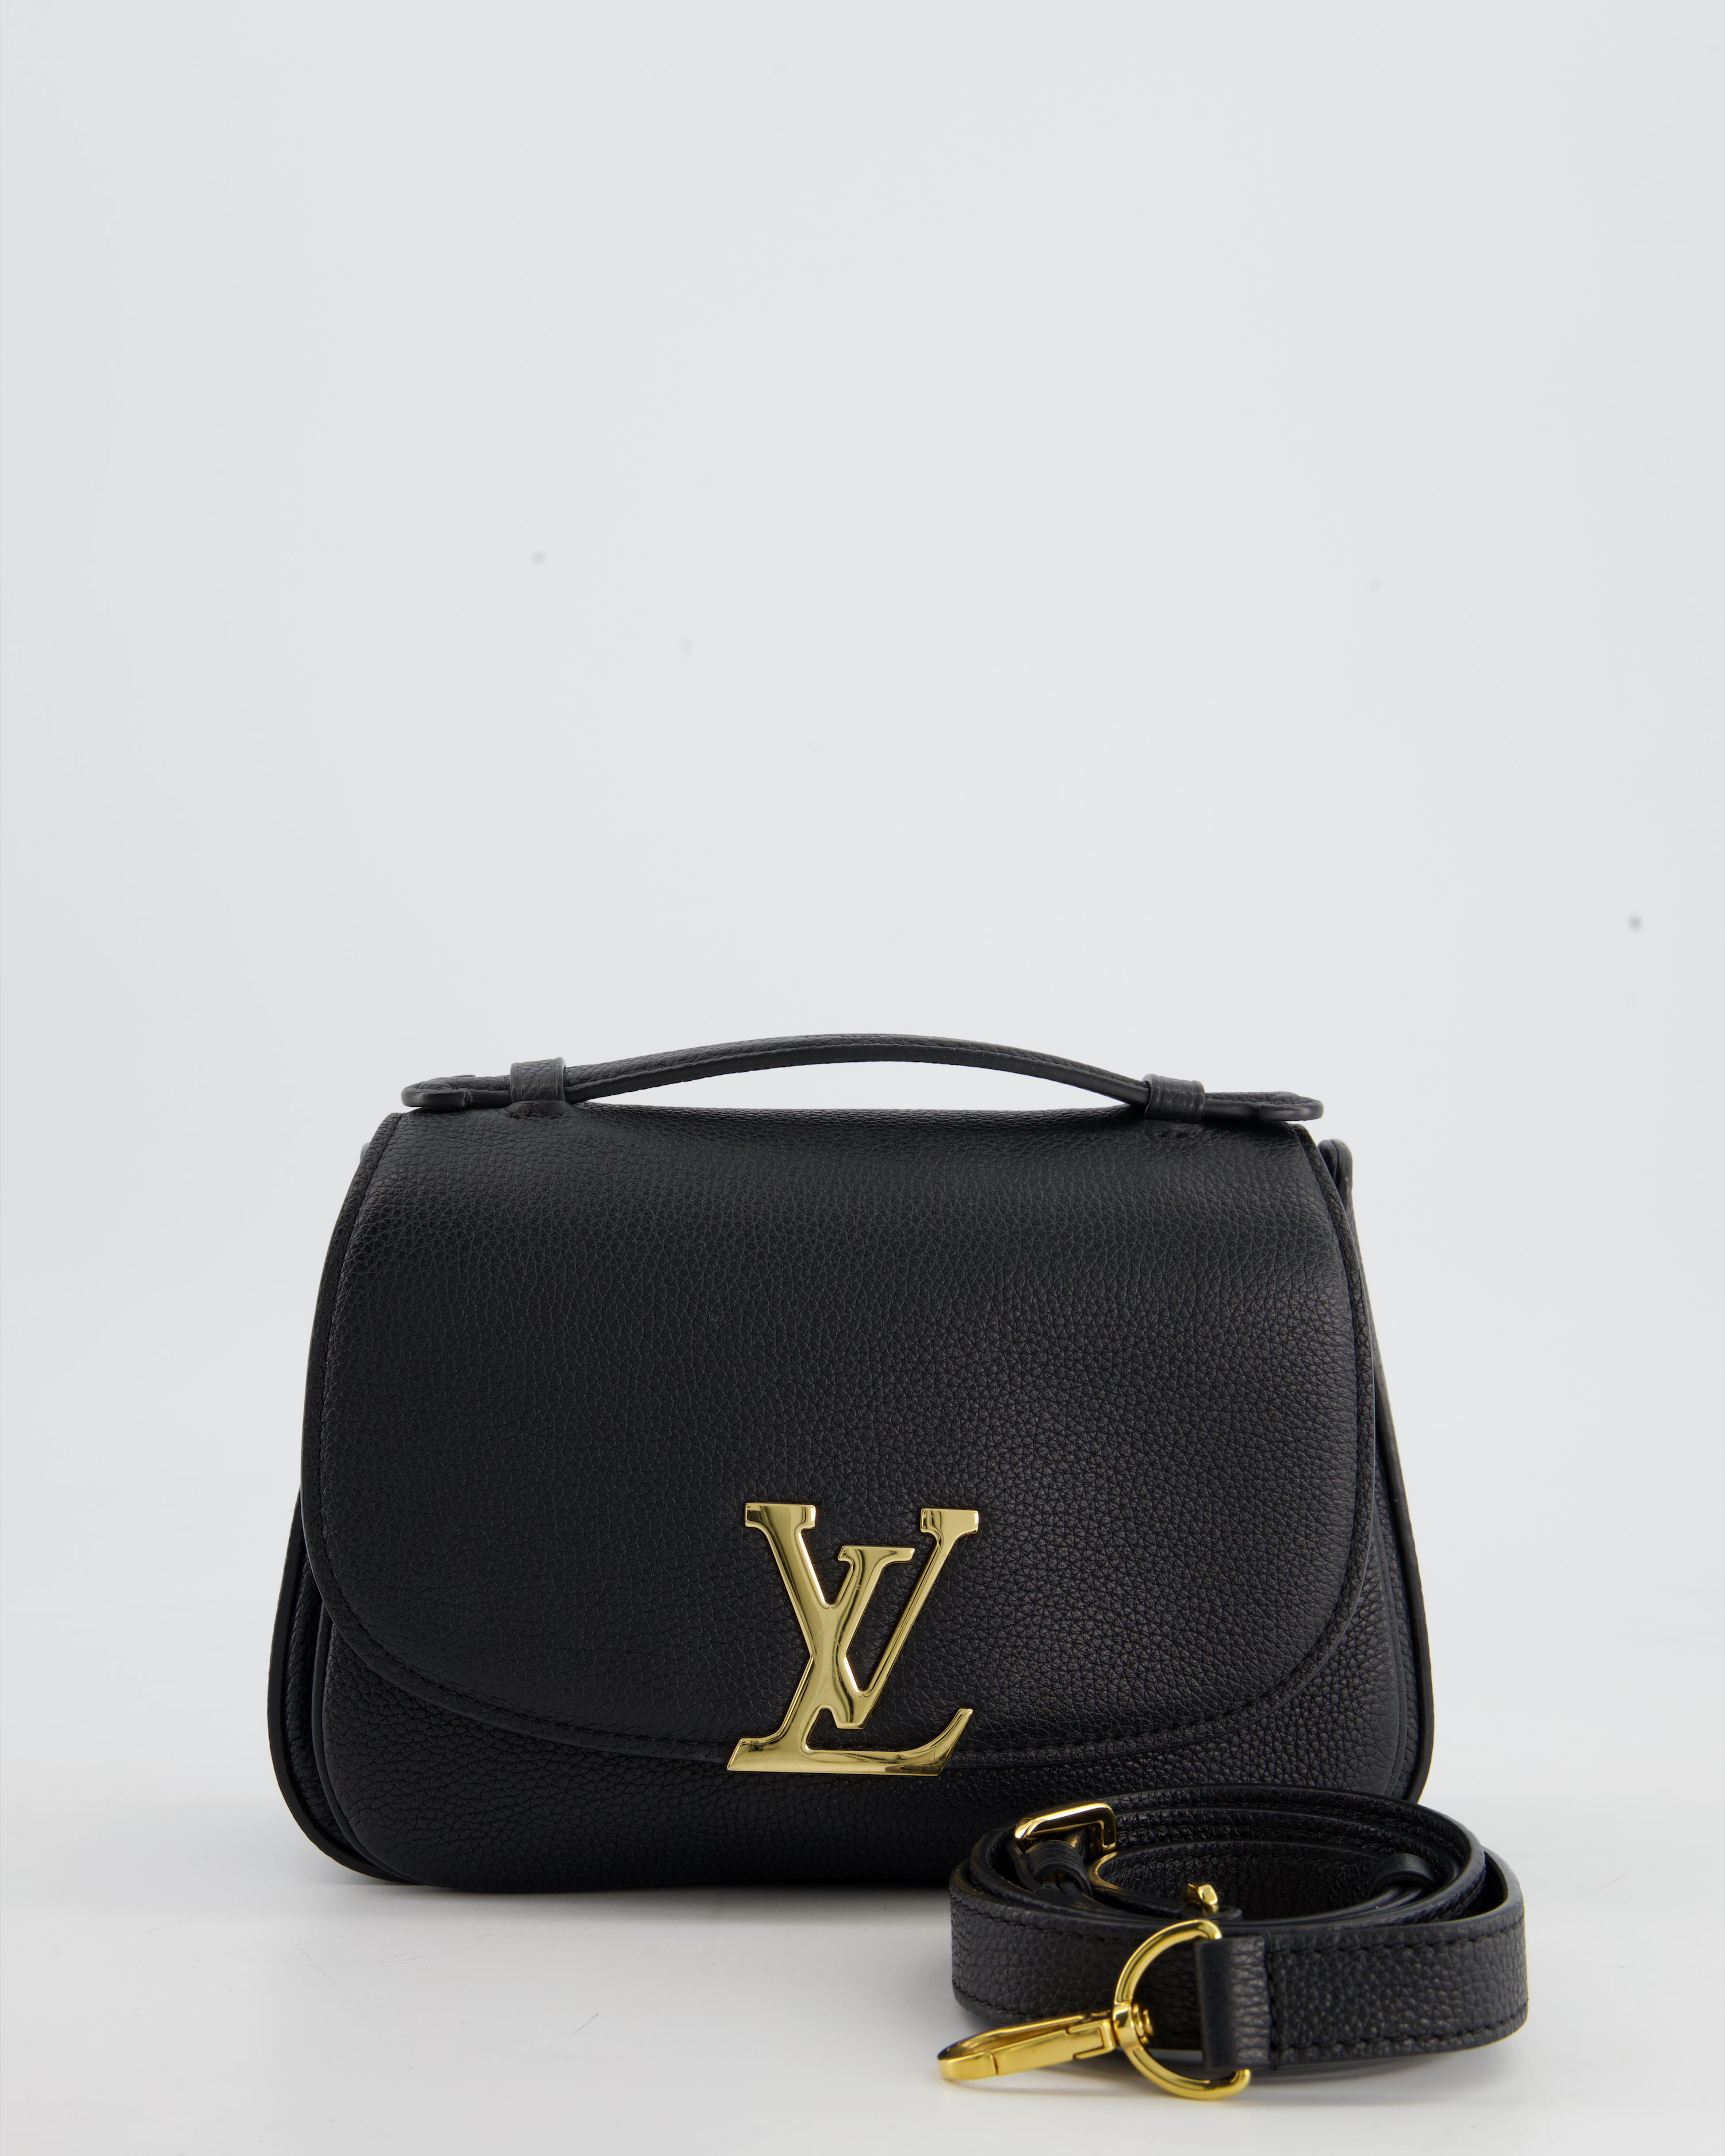 Louis Vuitton's Vivienne bag - logo or no logo? - DisneyRollerGirl